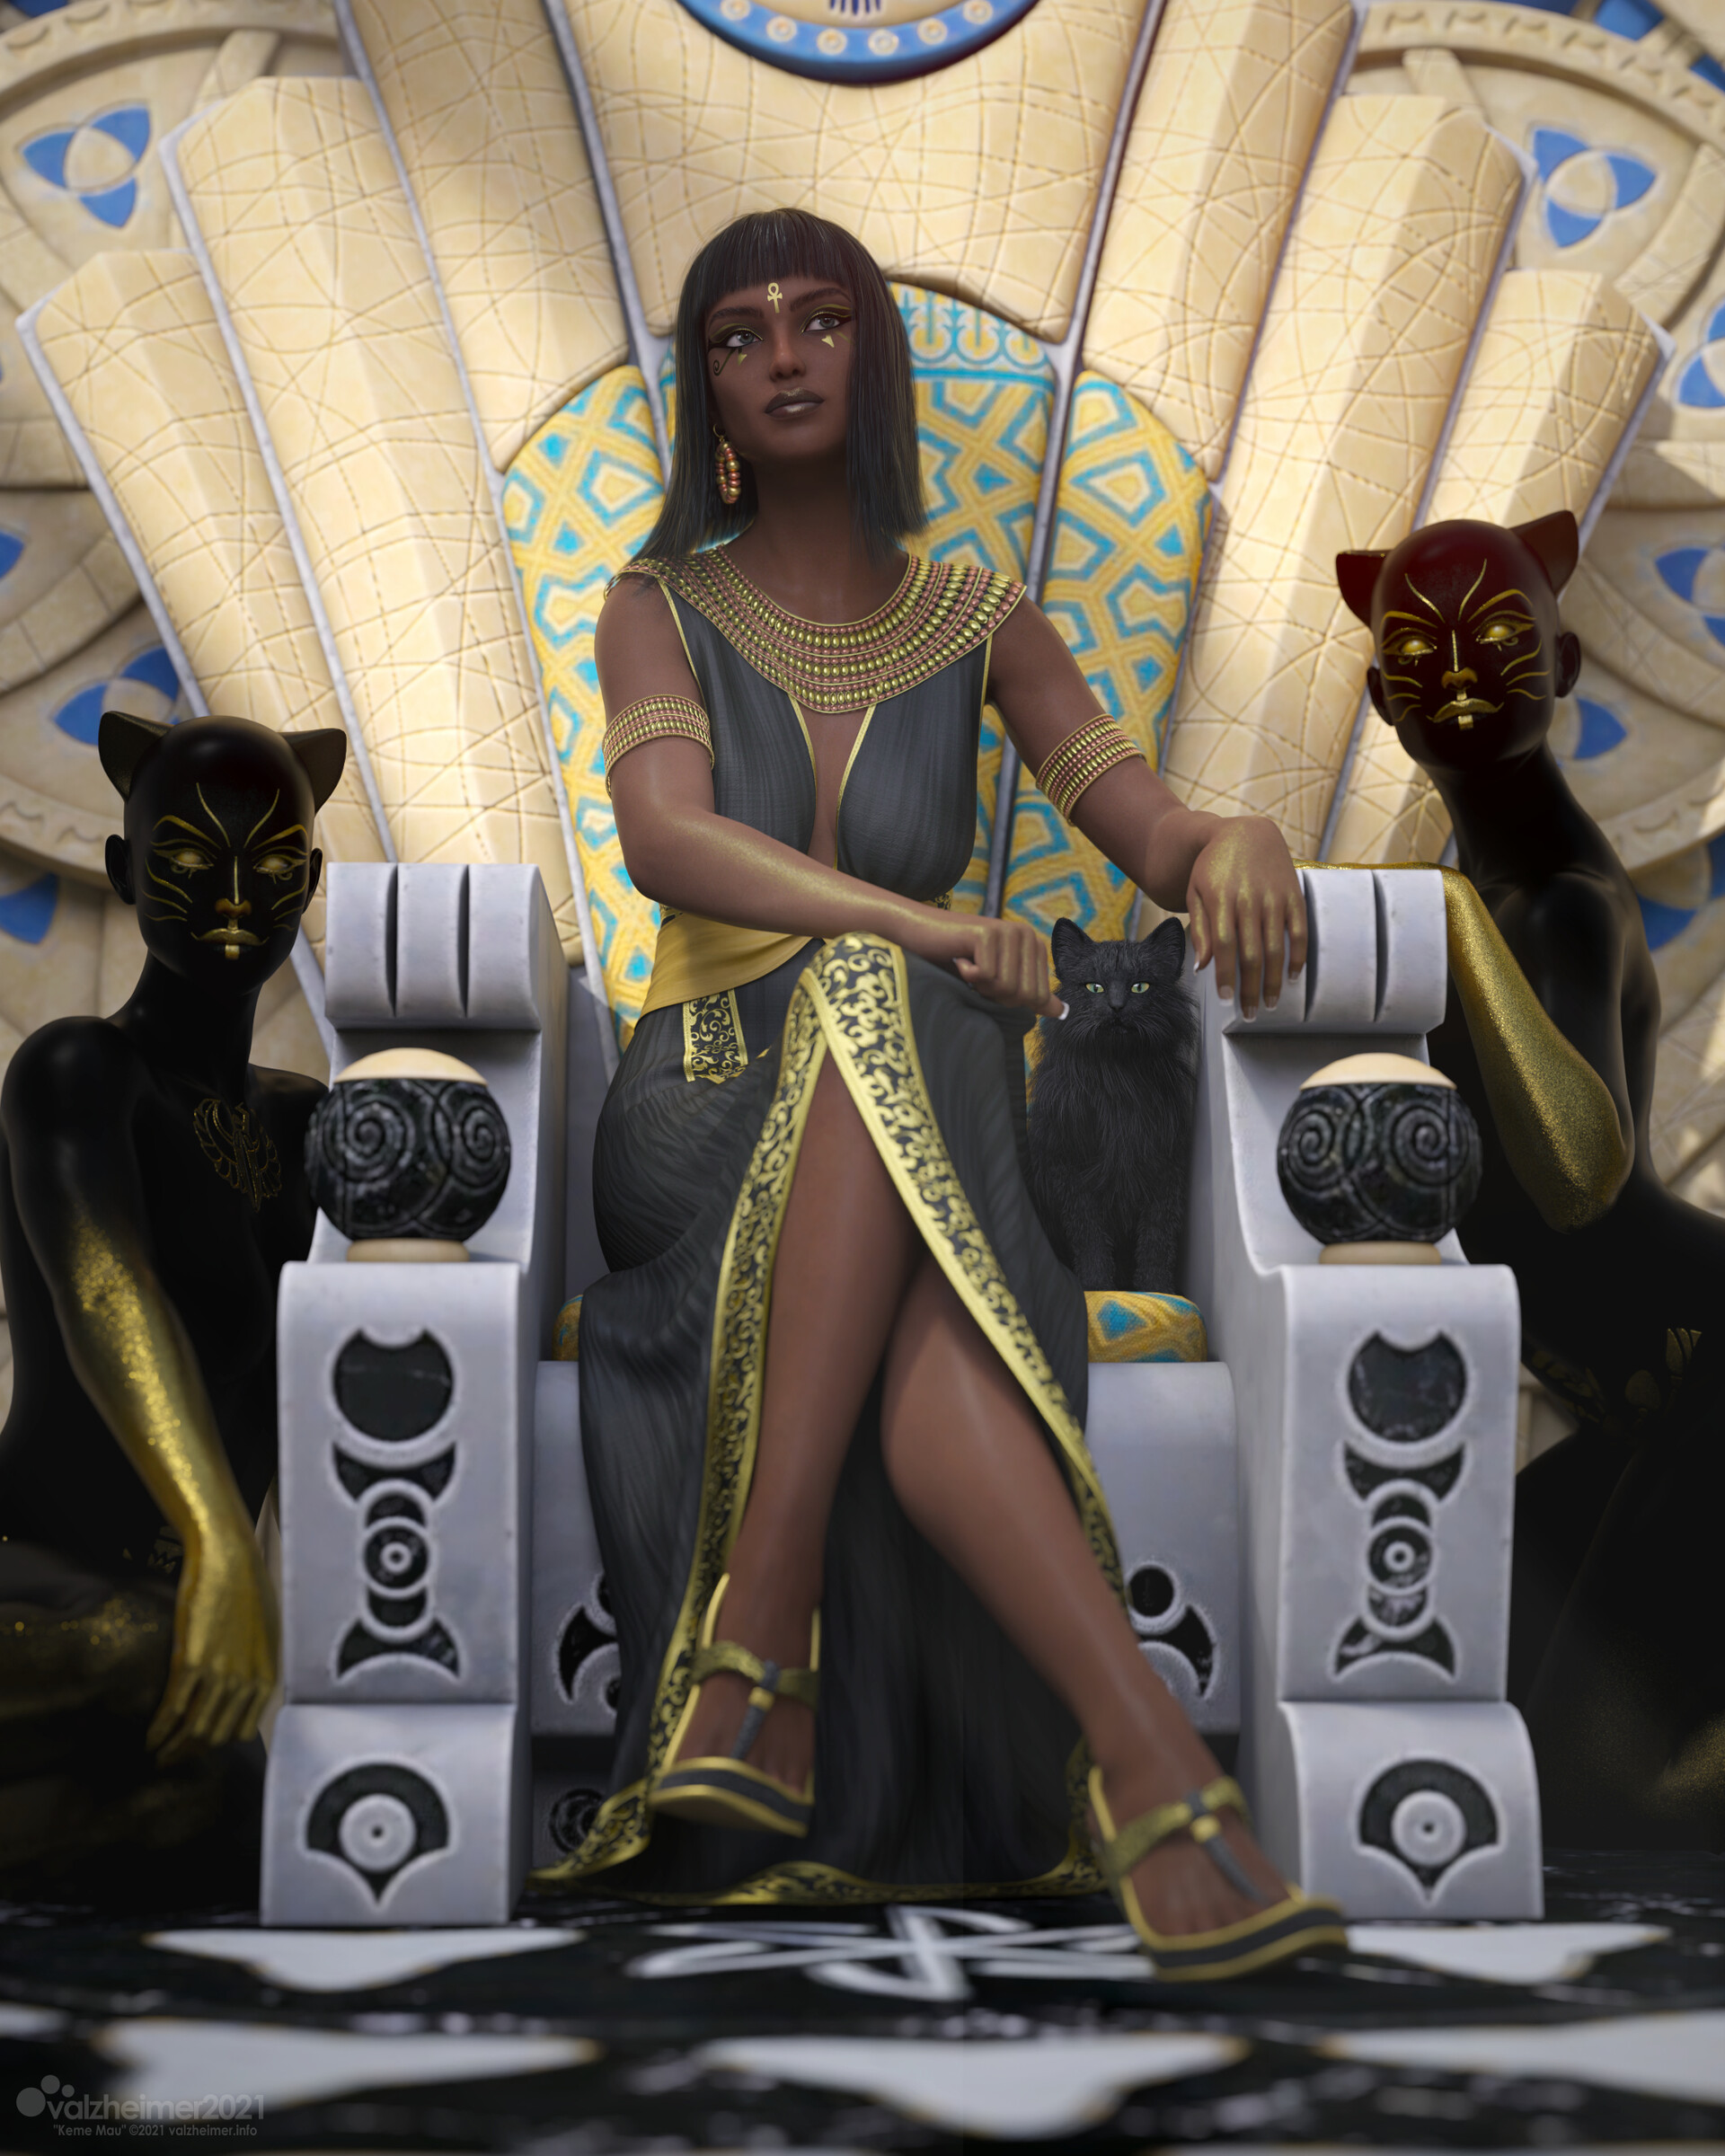 Verica Hupe Fantasy Art Fantasy Girl Legs Legs Crossed Sitting Women Digital Art Egyptian Mythology 1920x2400